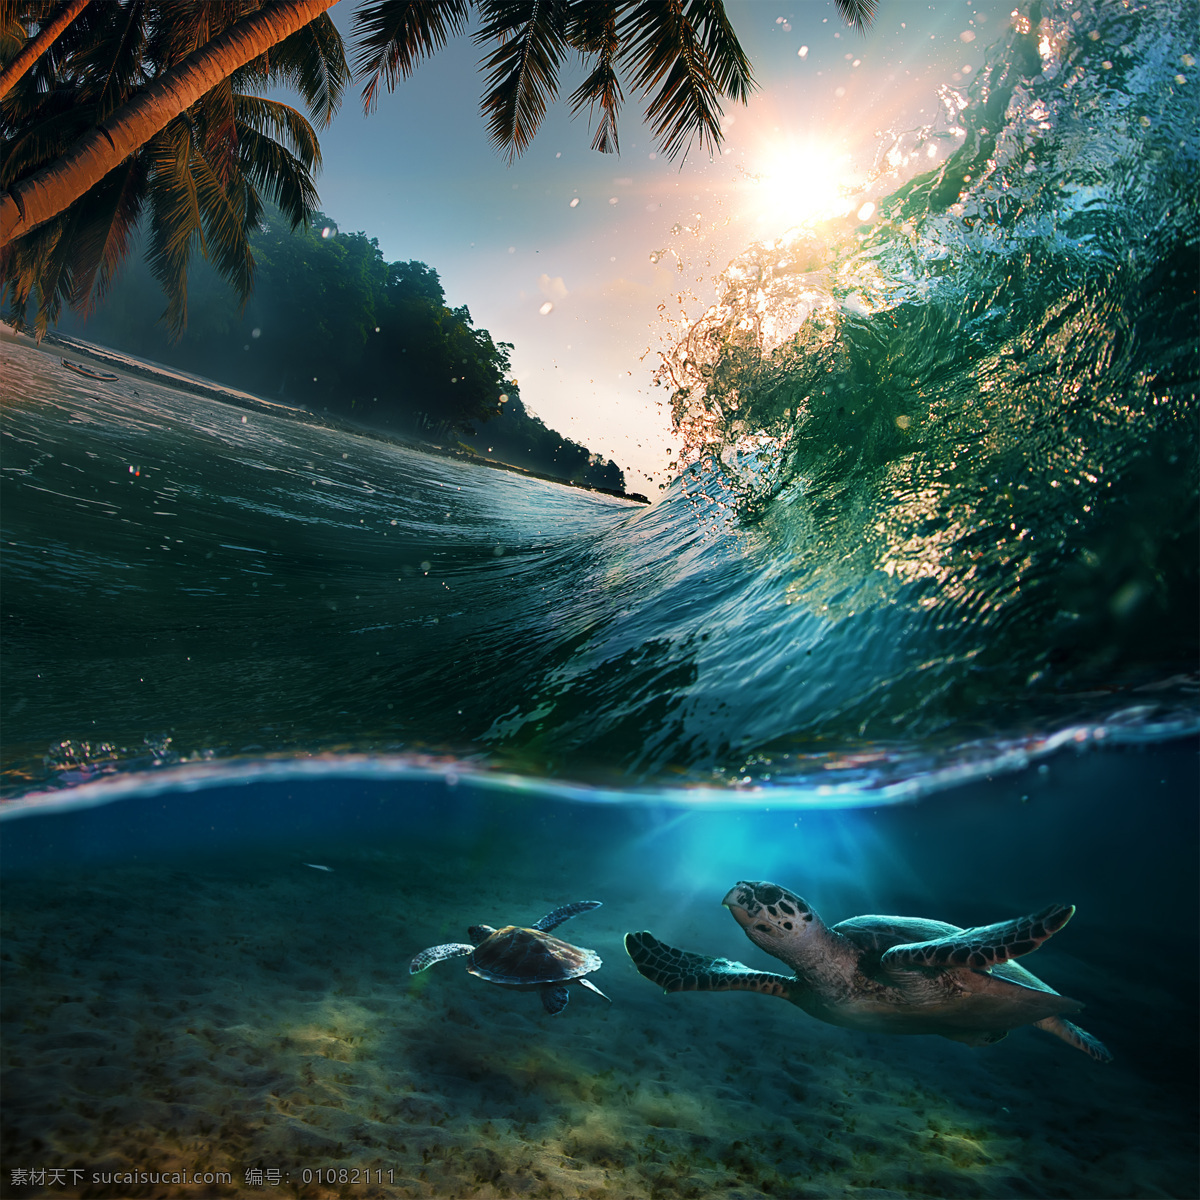 翻 海浪 悠闲 海龟 翻滚 卷起 浪花 海底世界 乌龟 椰树 海景 大海图片 风景图片